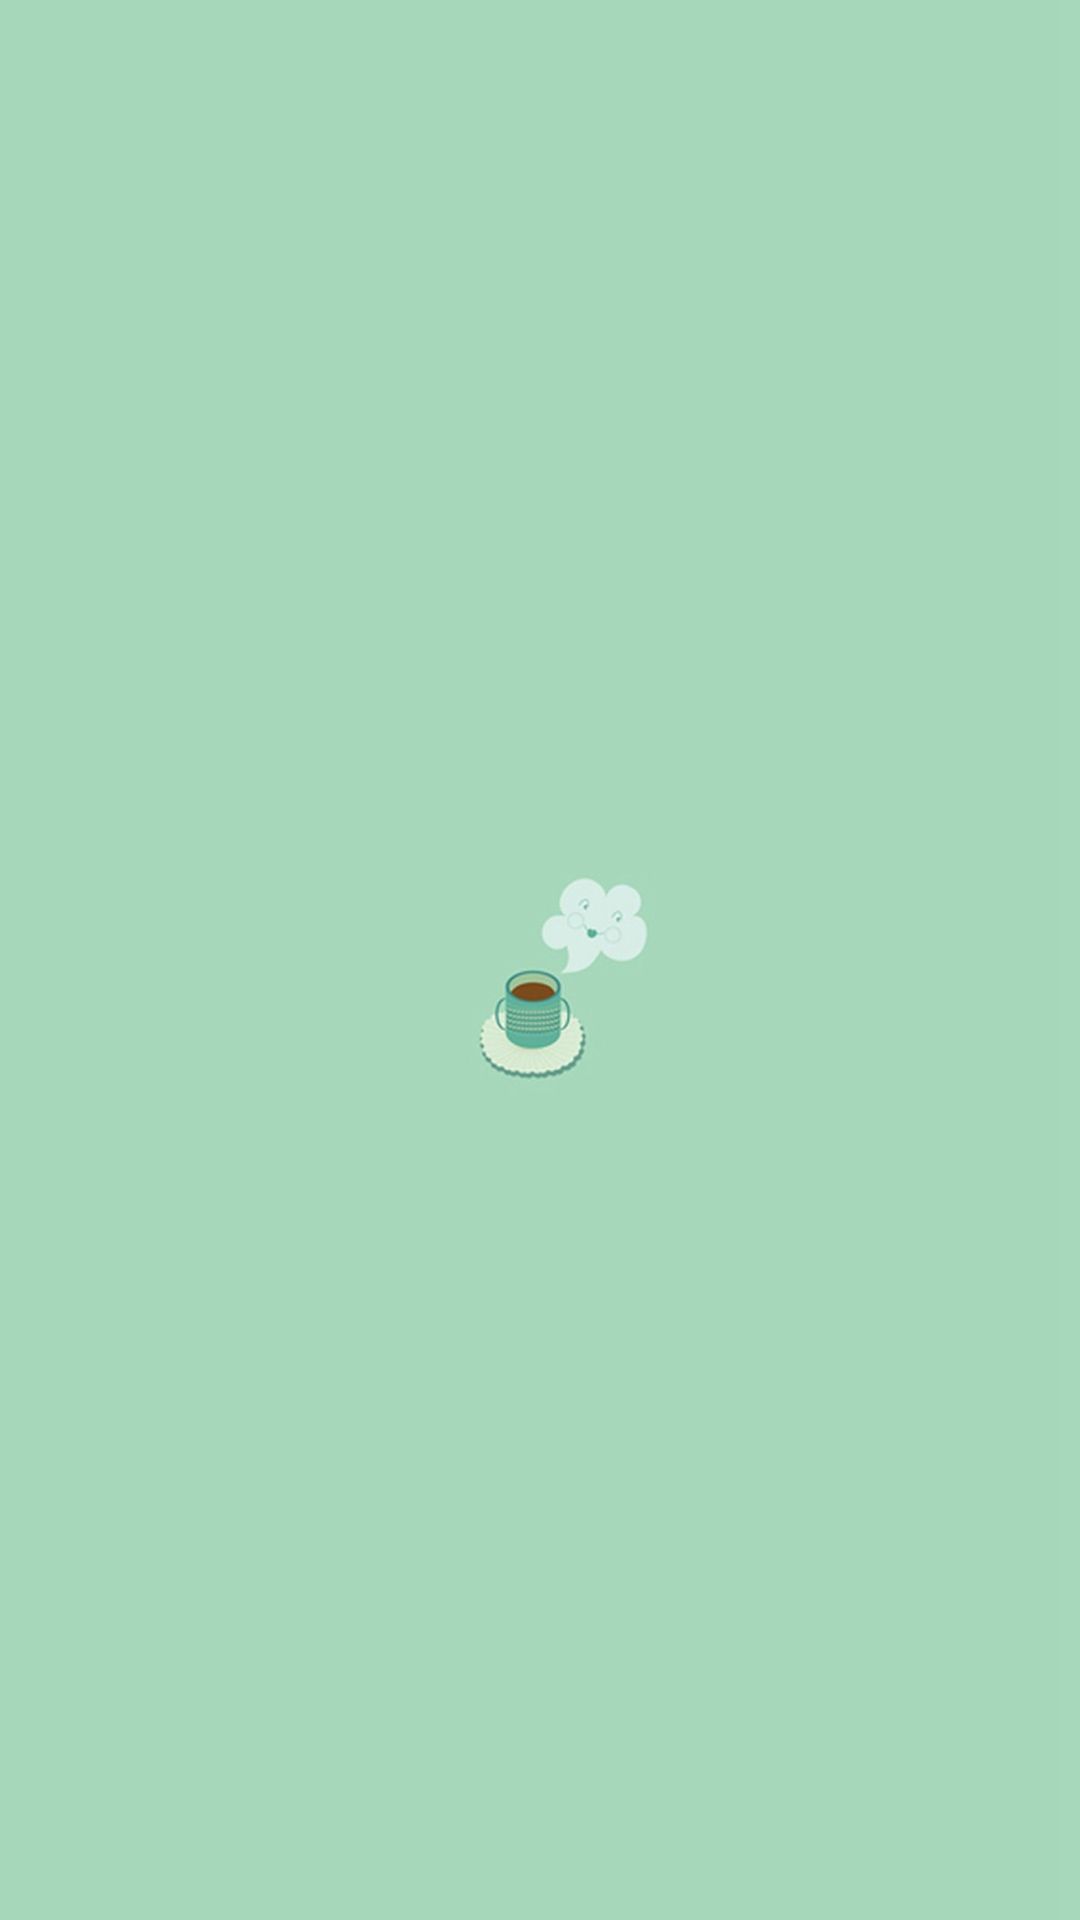 Simple Coffee Mug Flat Illustration iPhone 6 Wallpaper Download. iPhone Wallpaper, iPad wallpaper One-. Coffee wallpaper iphone, iPad wallpaper, Mint wallpaper